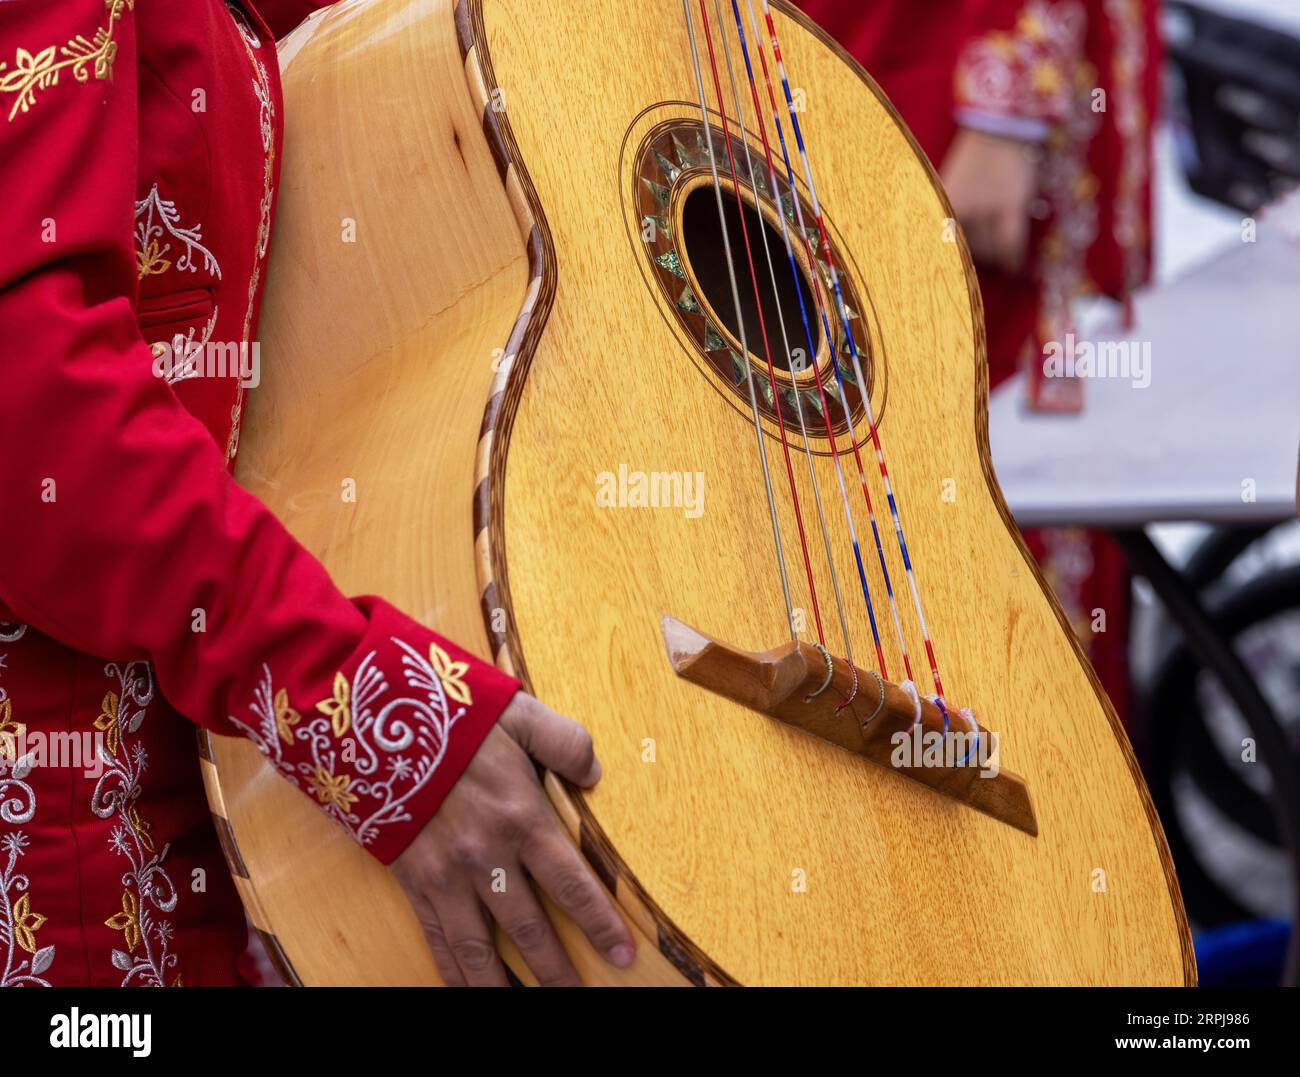 Nahaufnahme einer nicht erkennbaren Mariachi-Frau in traditionellem Charra-Kostüm mit einem Mariachi Guitarrón Mexicano (große mexikanische Gitarre) Stockfoto